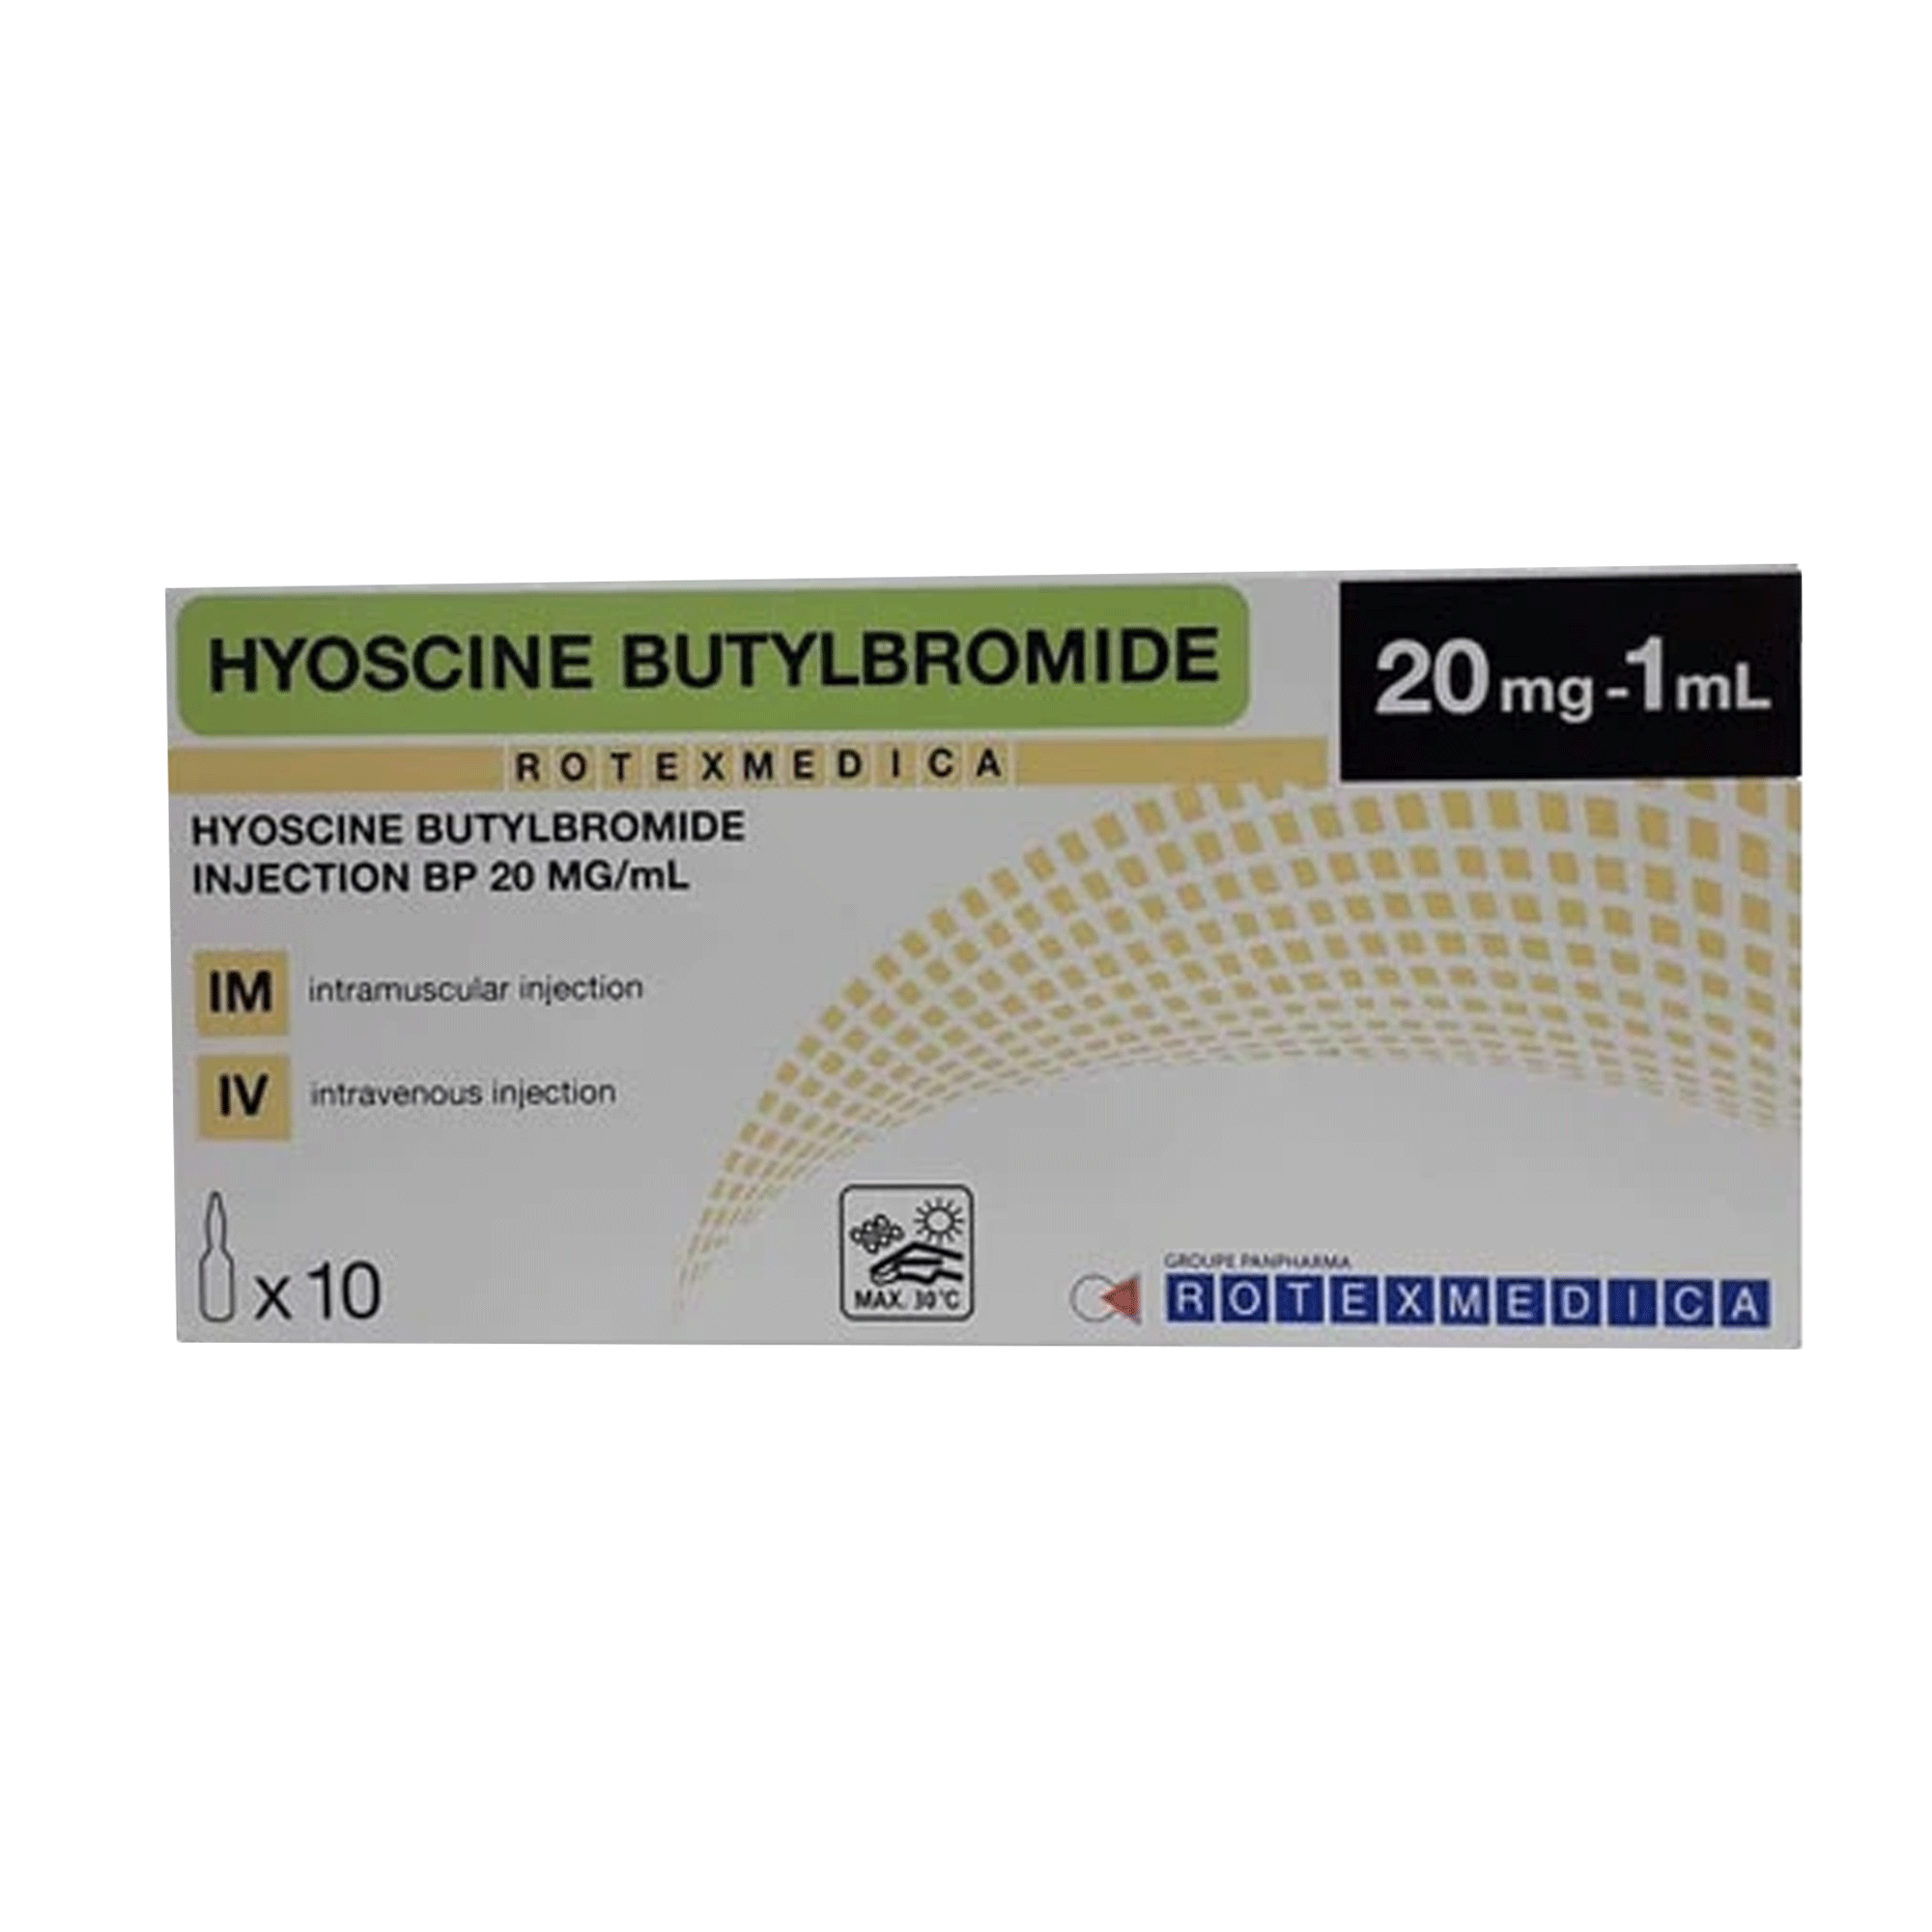 Thuoc-Hyoscine-Butylbromide-Injection-BP-20mg-la-thuoc-gi